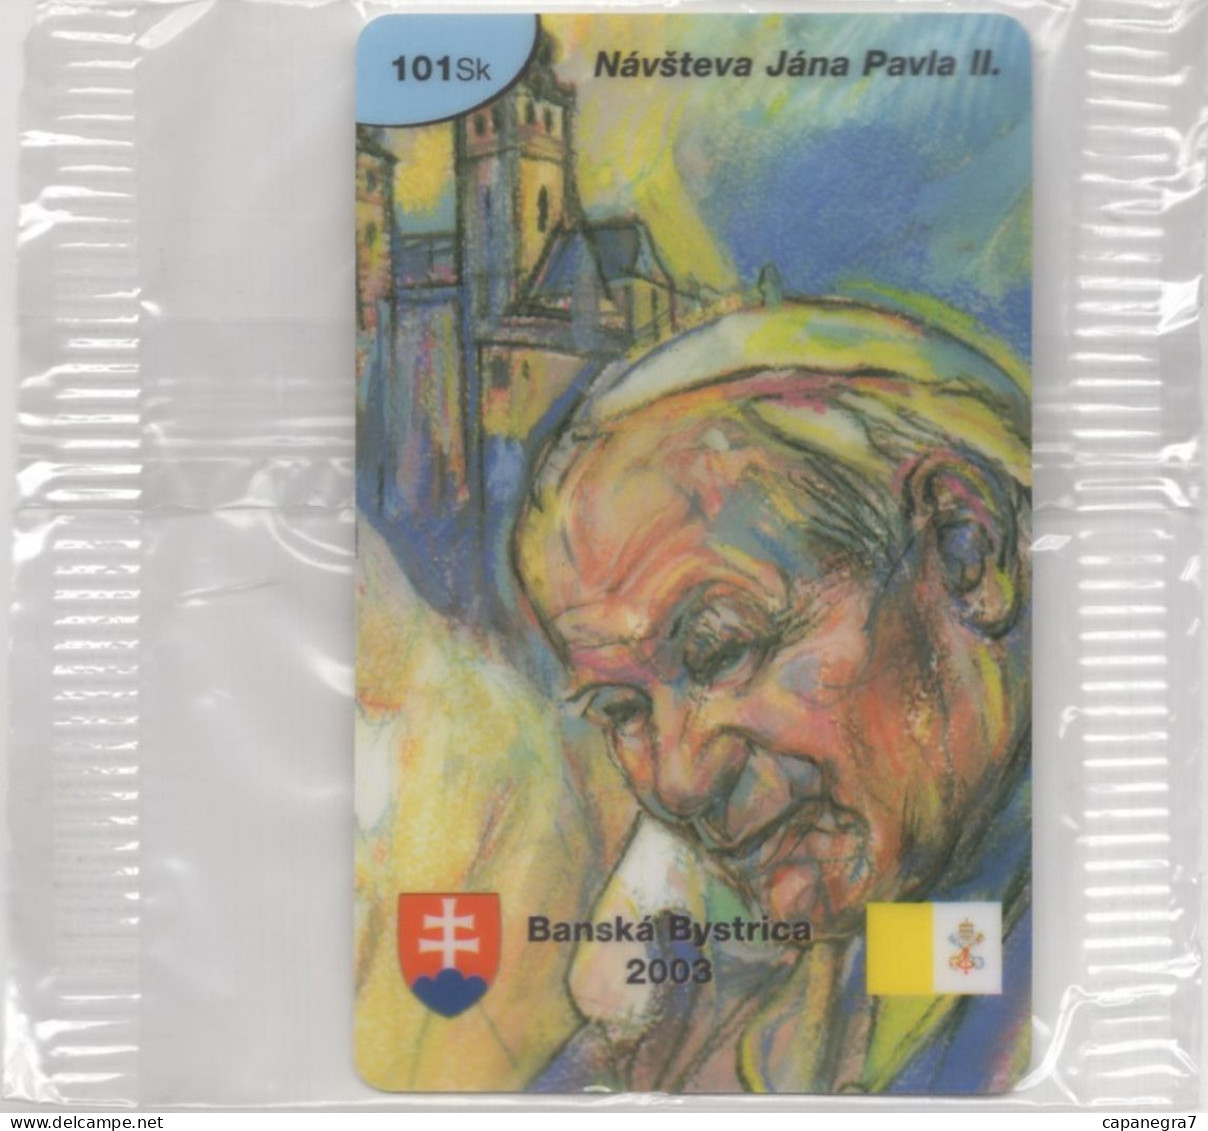 Pope John Paulu II. - Banská Bystica 2003, Prepaid Calling Card, 101 Sk., 1.250 Pc., GlobalIPhone, Slovak, Mint, Packed - Slowakei